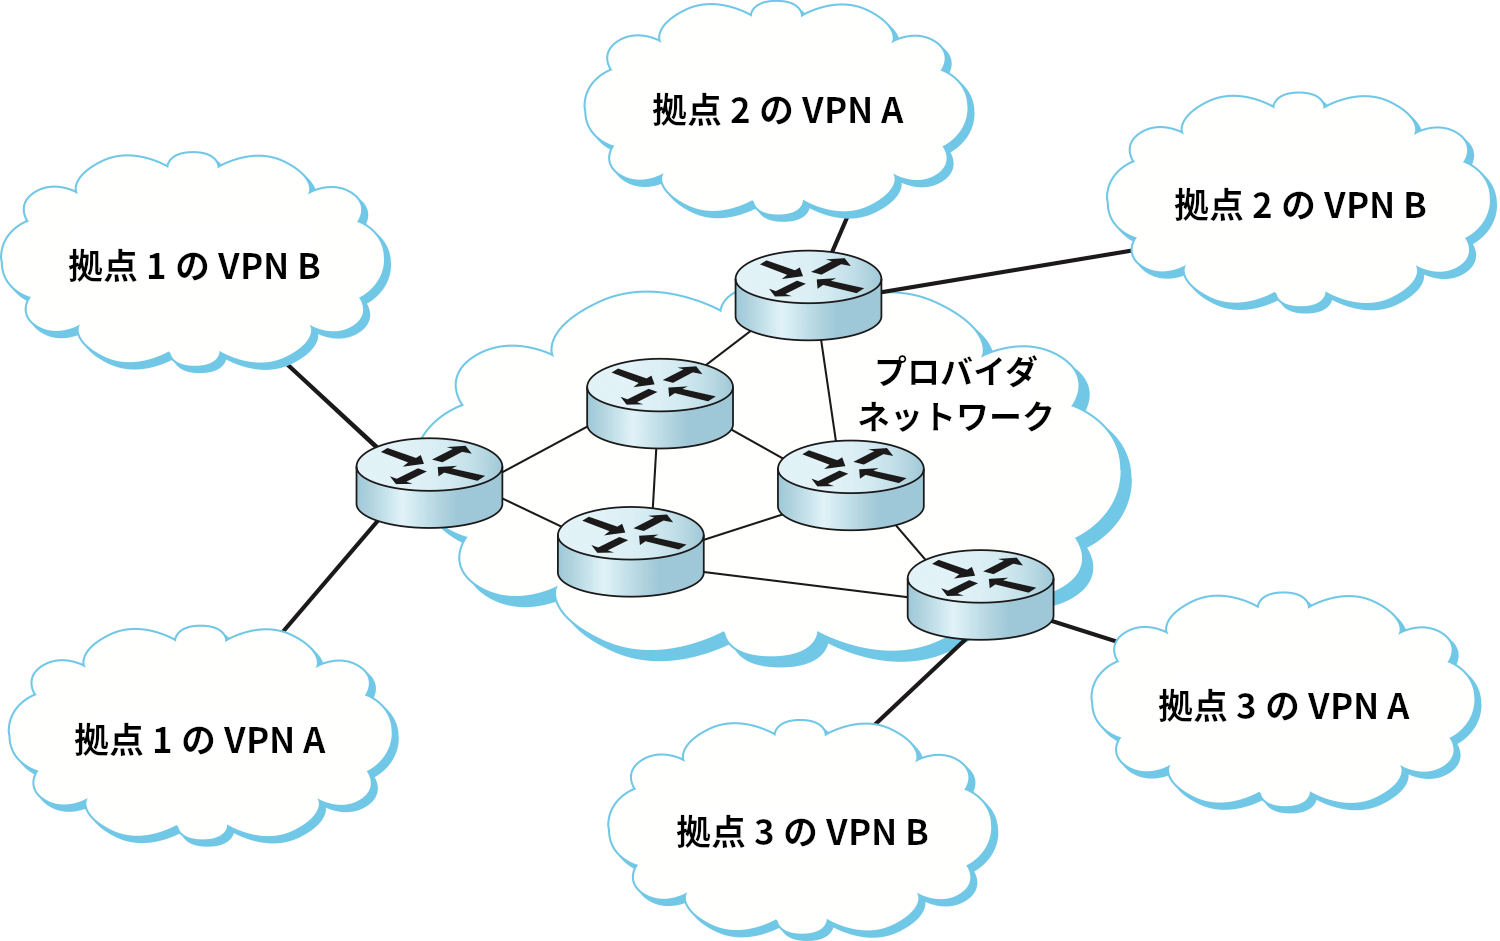 第 3 層 VPN の例: 単一のプロバイダが顧客 A, B に仮想プライベート IP サービスを提供する。